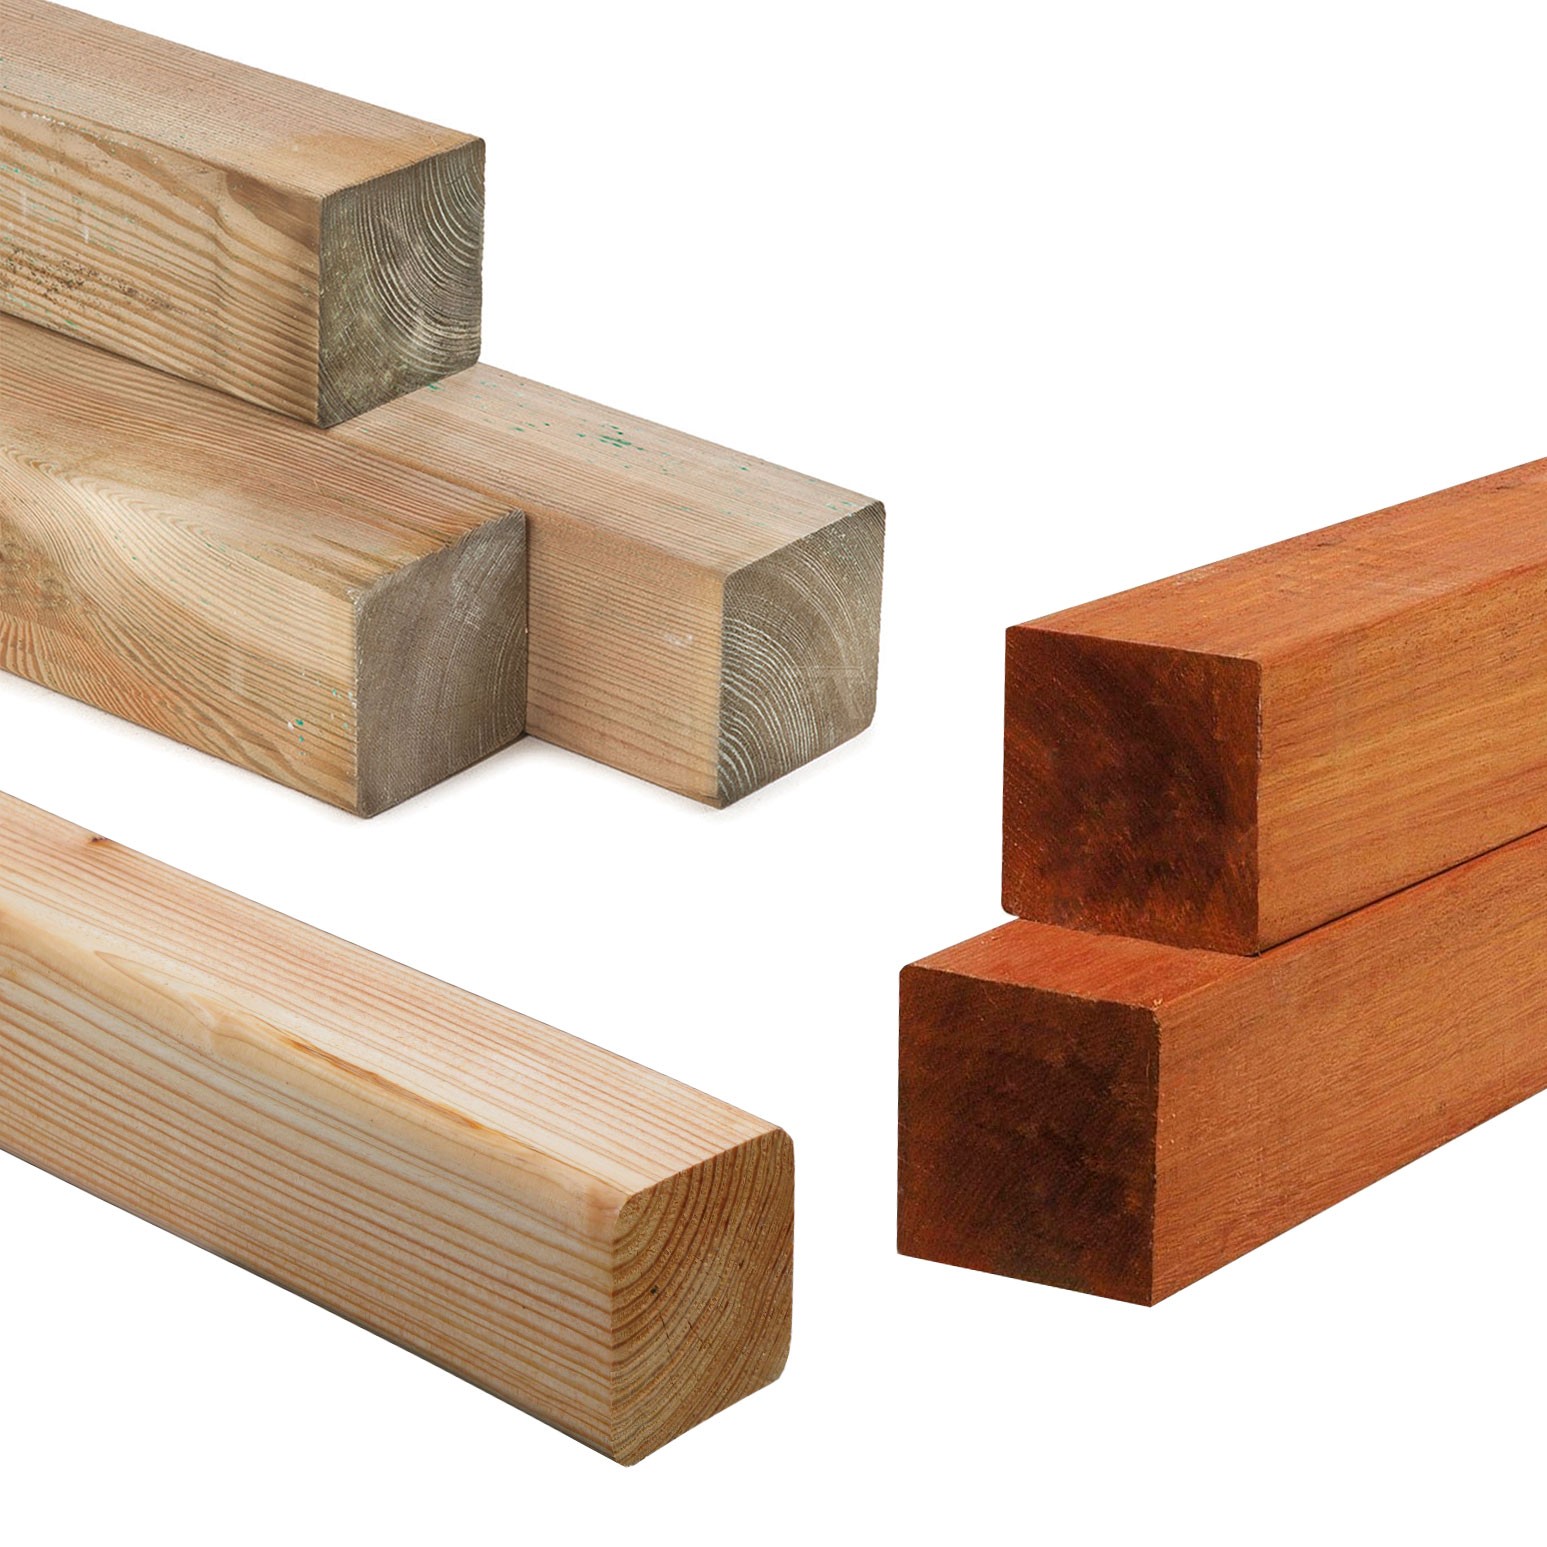 inspanning James Dyson moeilijk tevreden te krijgen Vierkant hout